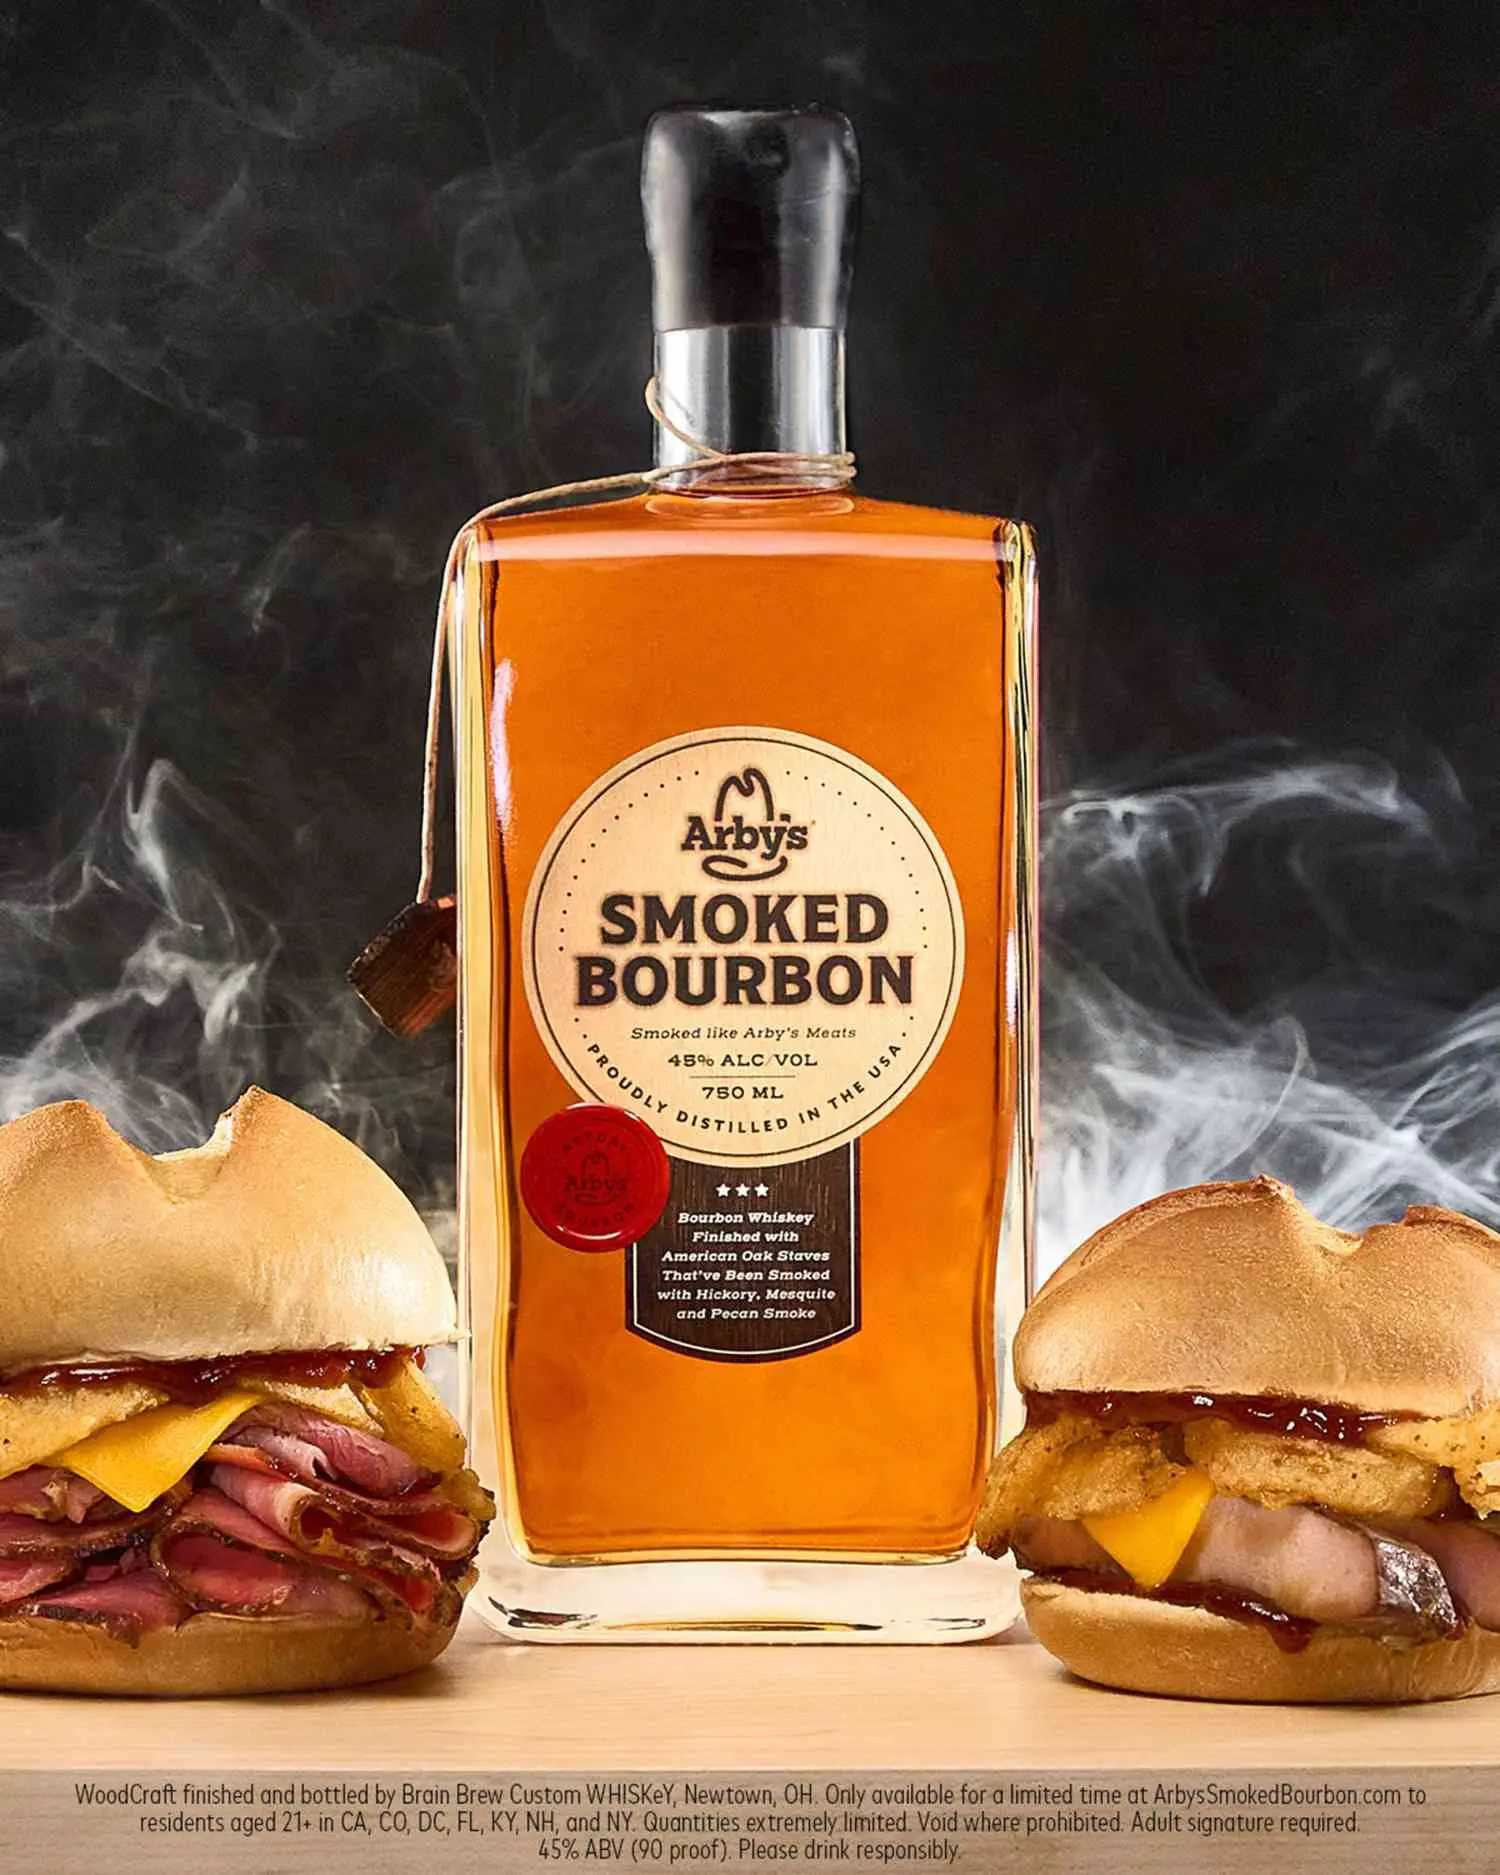 smoked bourbon whiskey - What makes bourbon smoky